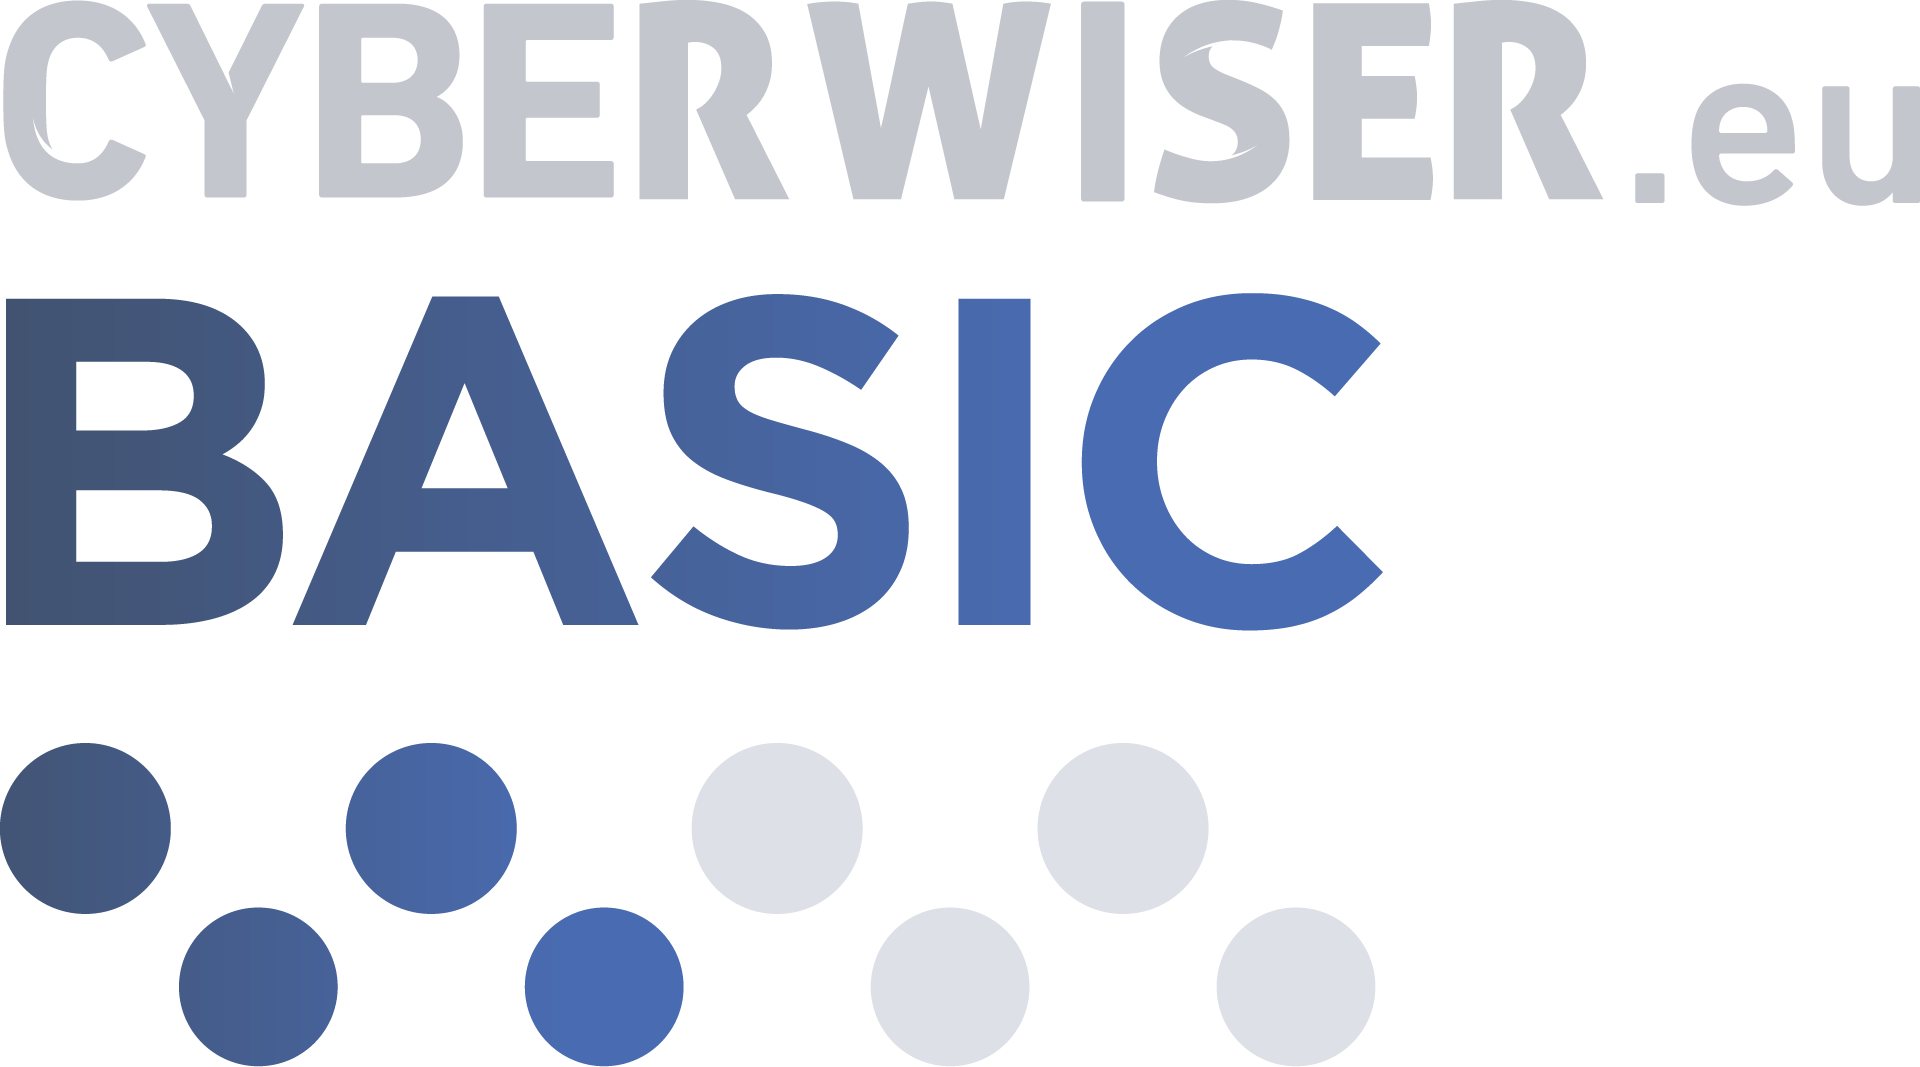 CYBERWISER.eu BASIC 